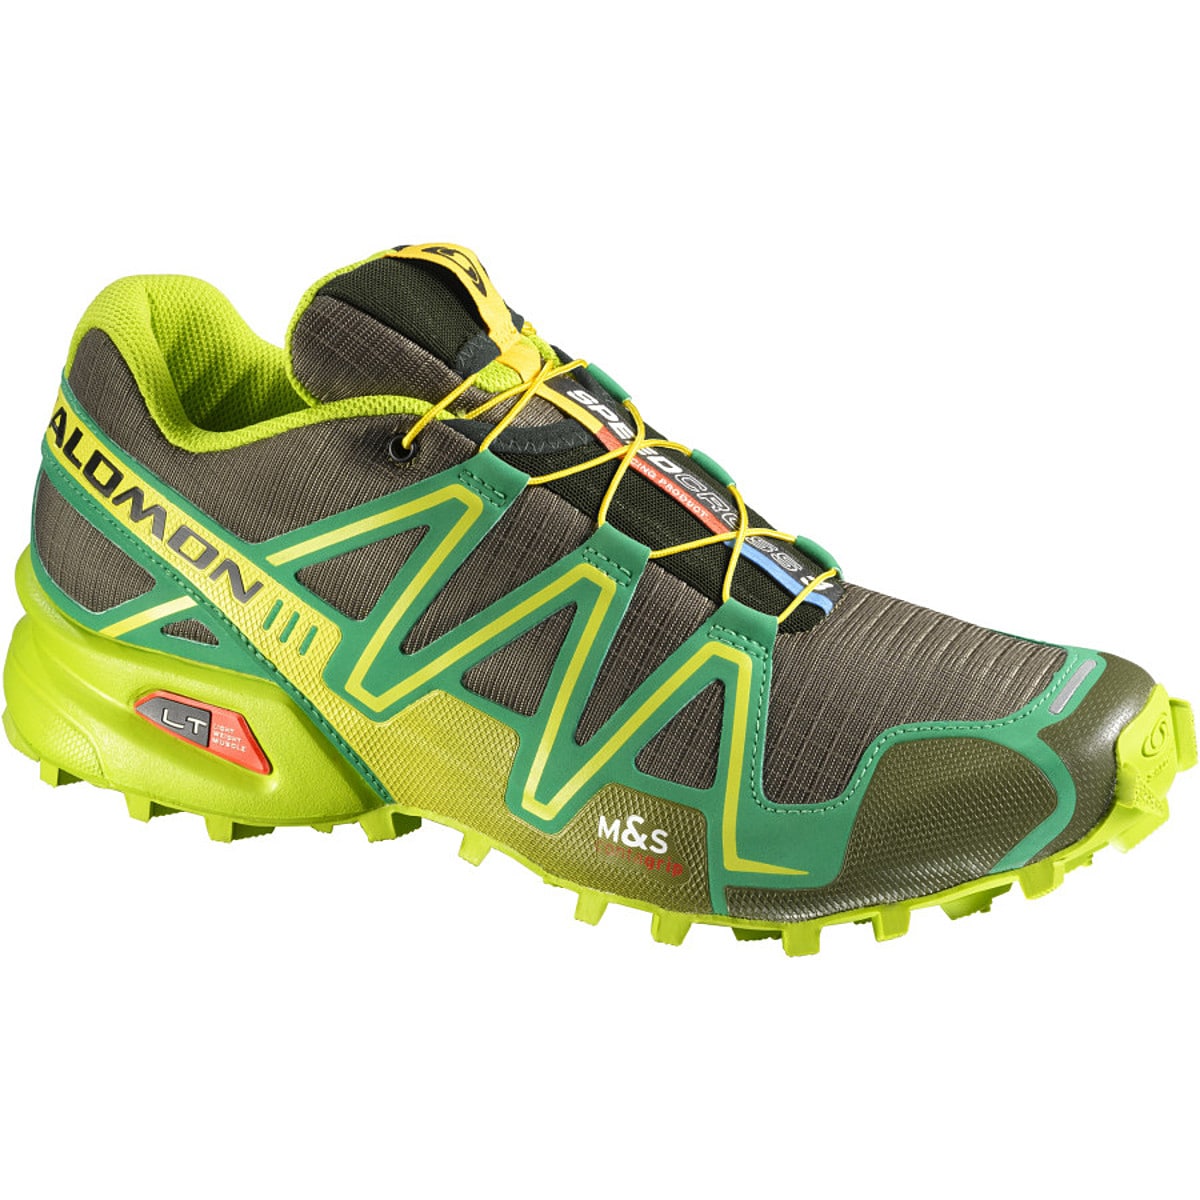 ejendom kursiv Forskelle Salomon Speedcross 3 Trail Running Shoe - Men's - Men